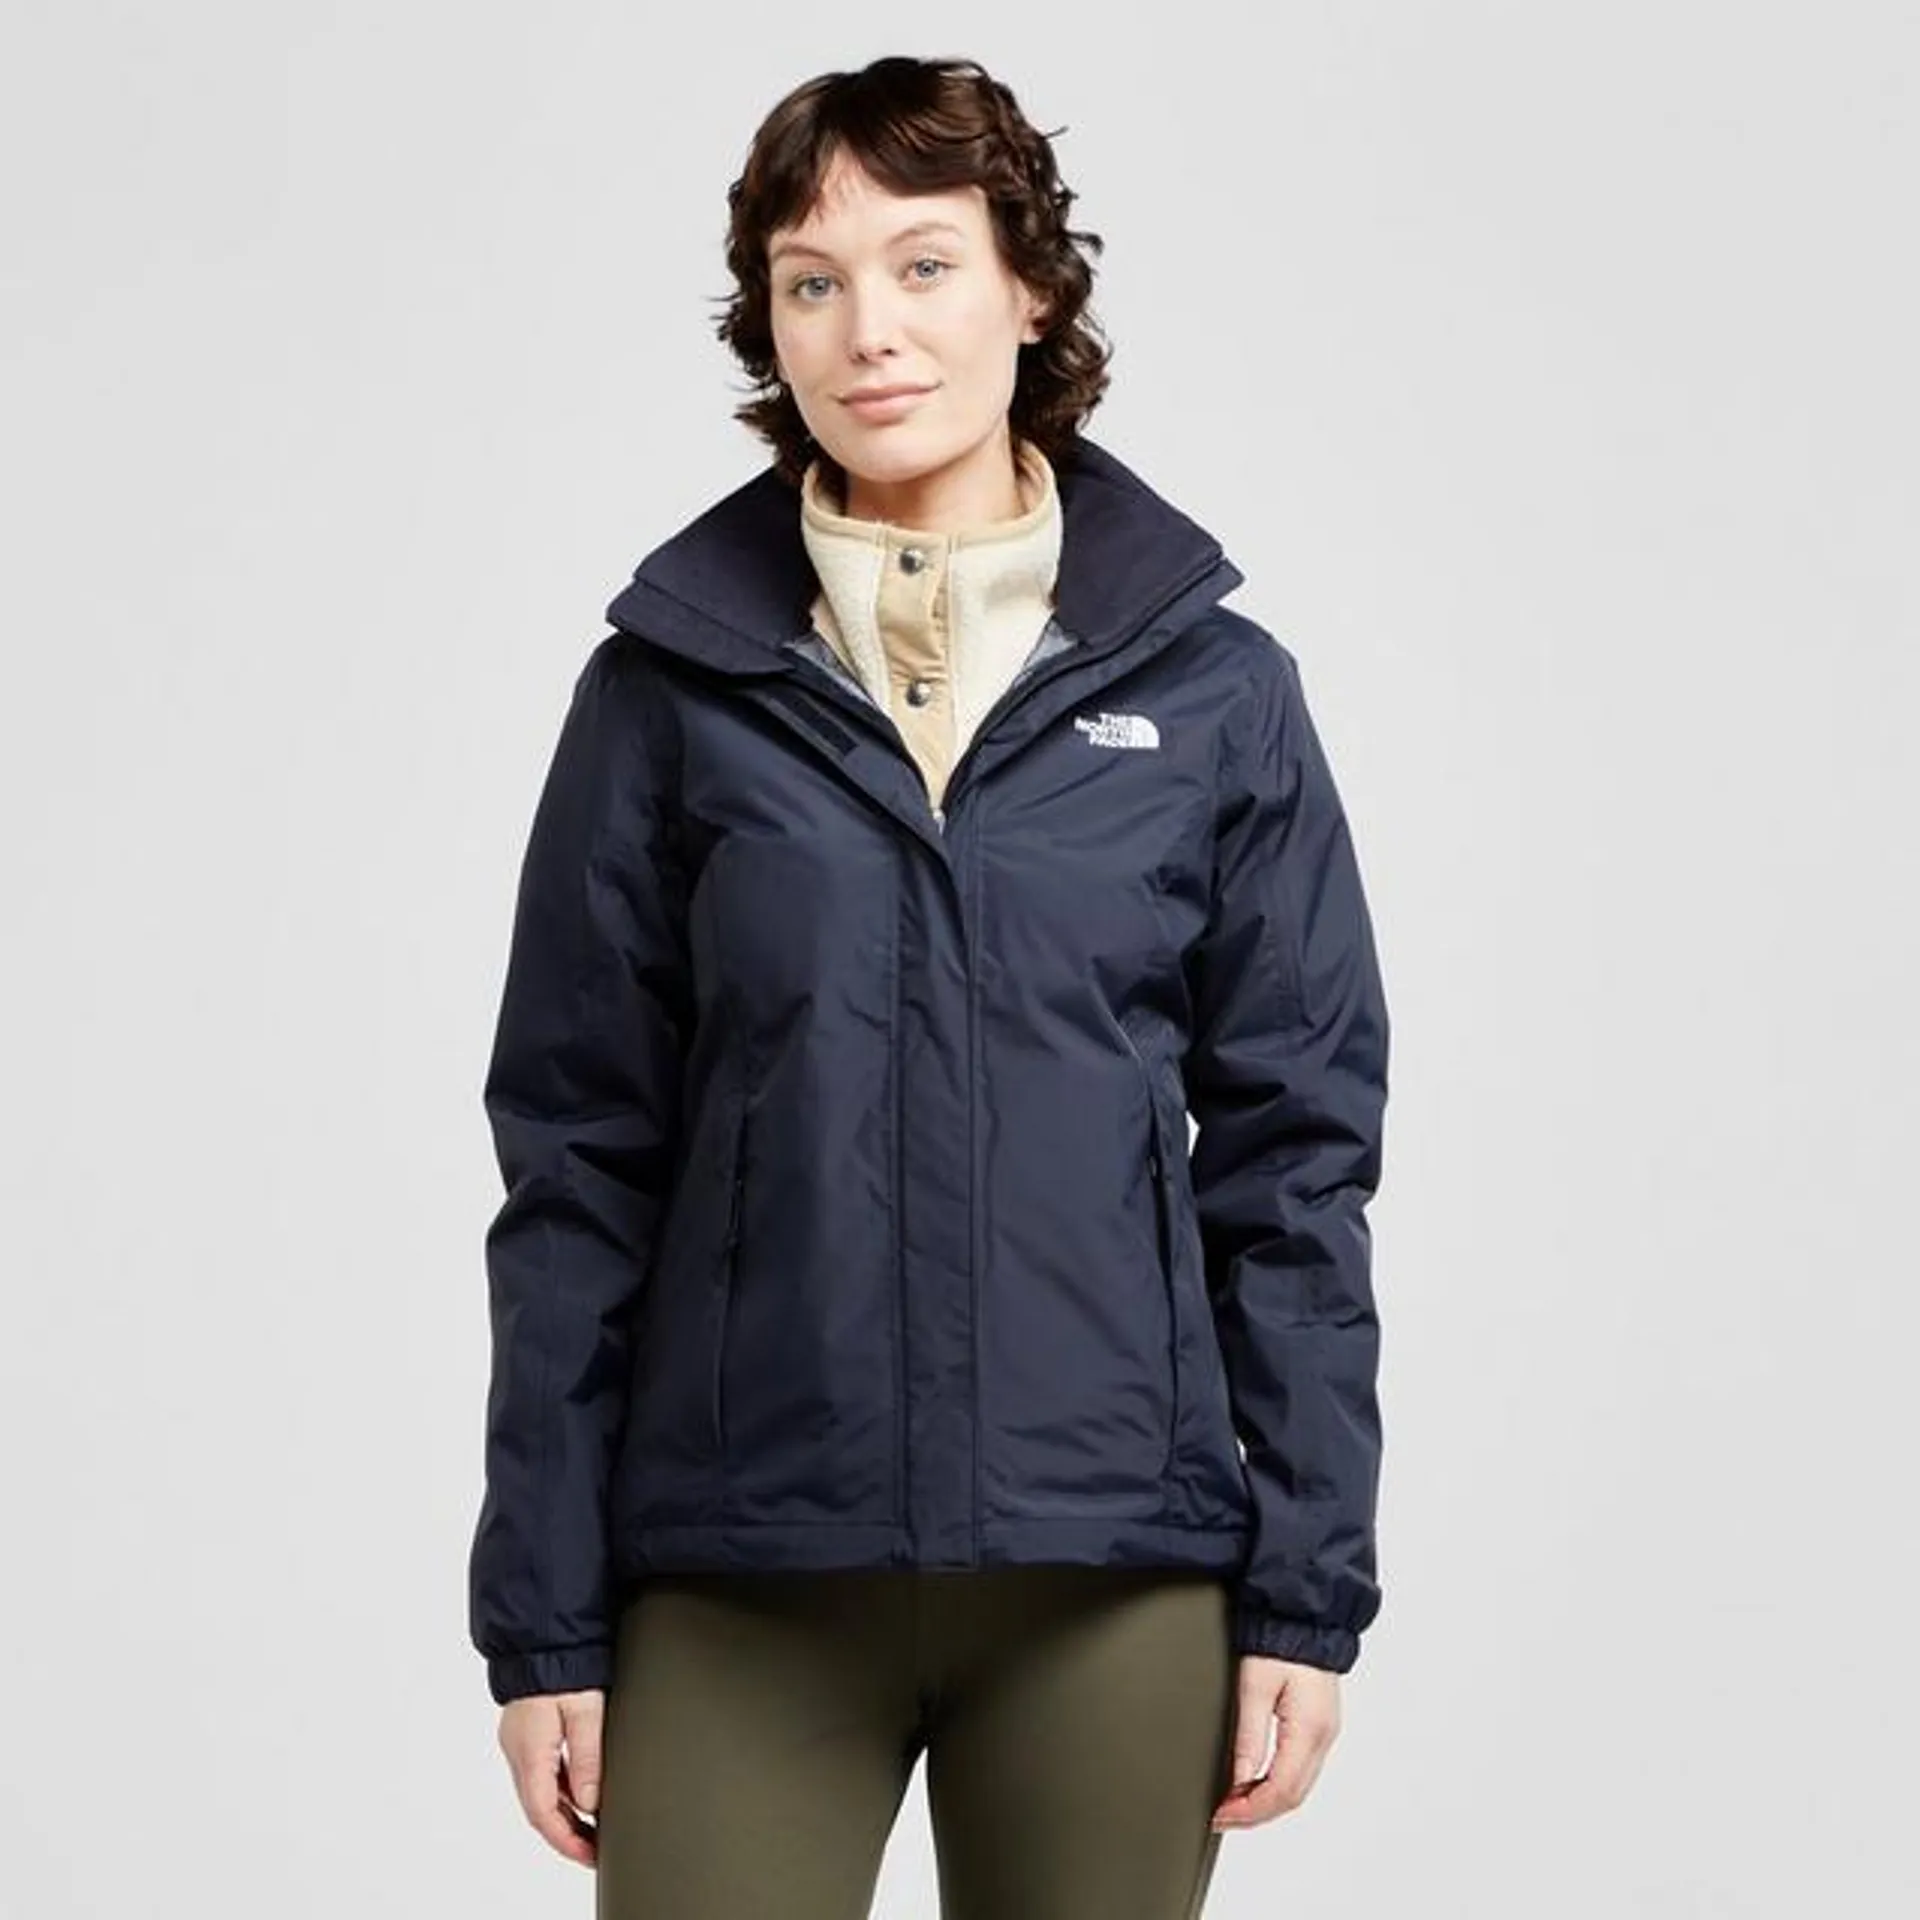 Women’s Resolve Waterproof Jacket